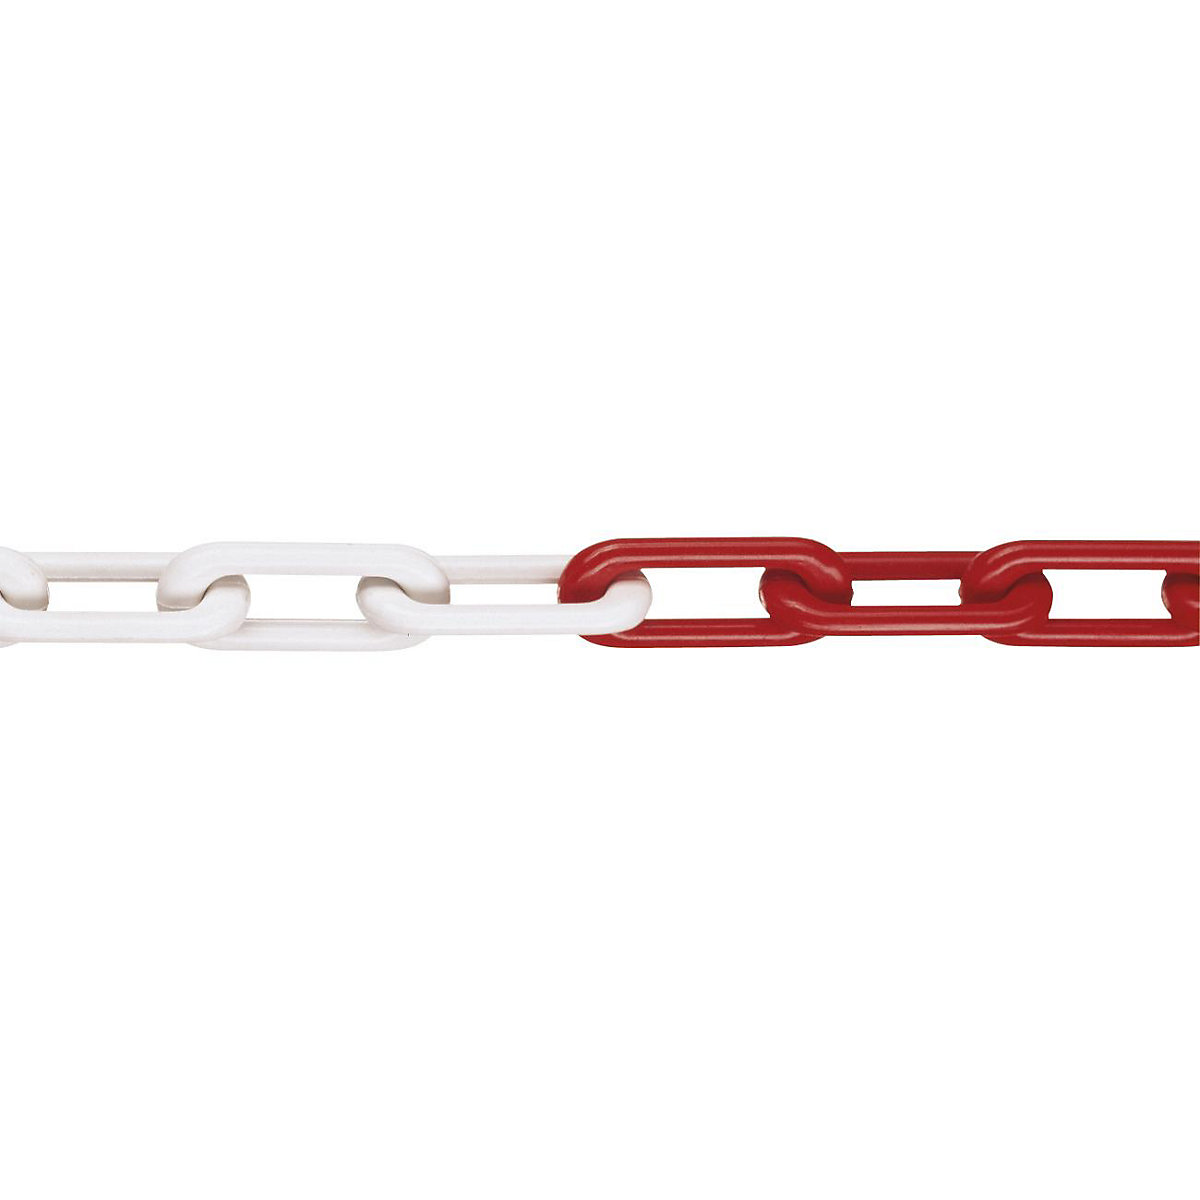 Łańcuch z nylonu, jakość MNK 8, dł. wiązki 25 m, biało-czerwony, od 4 szt.-4